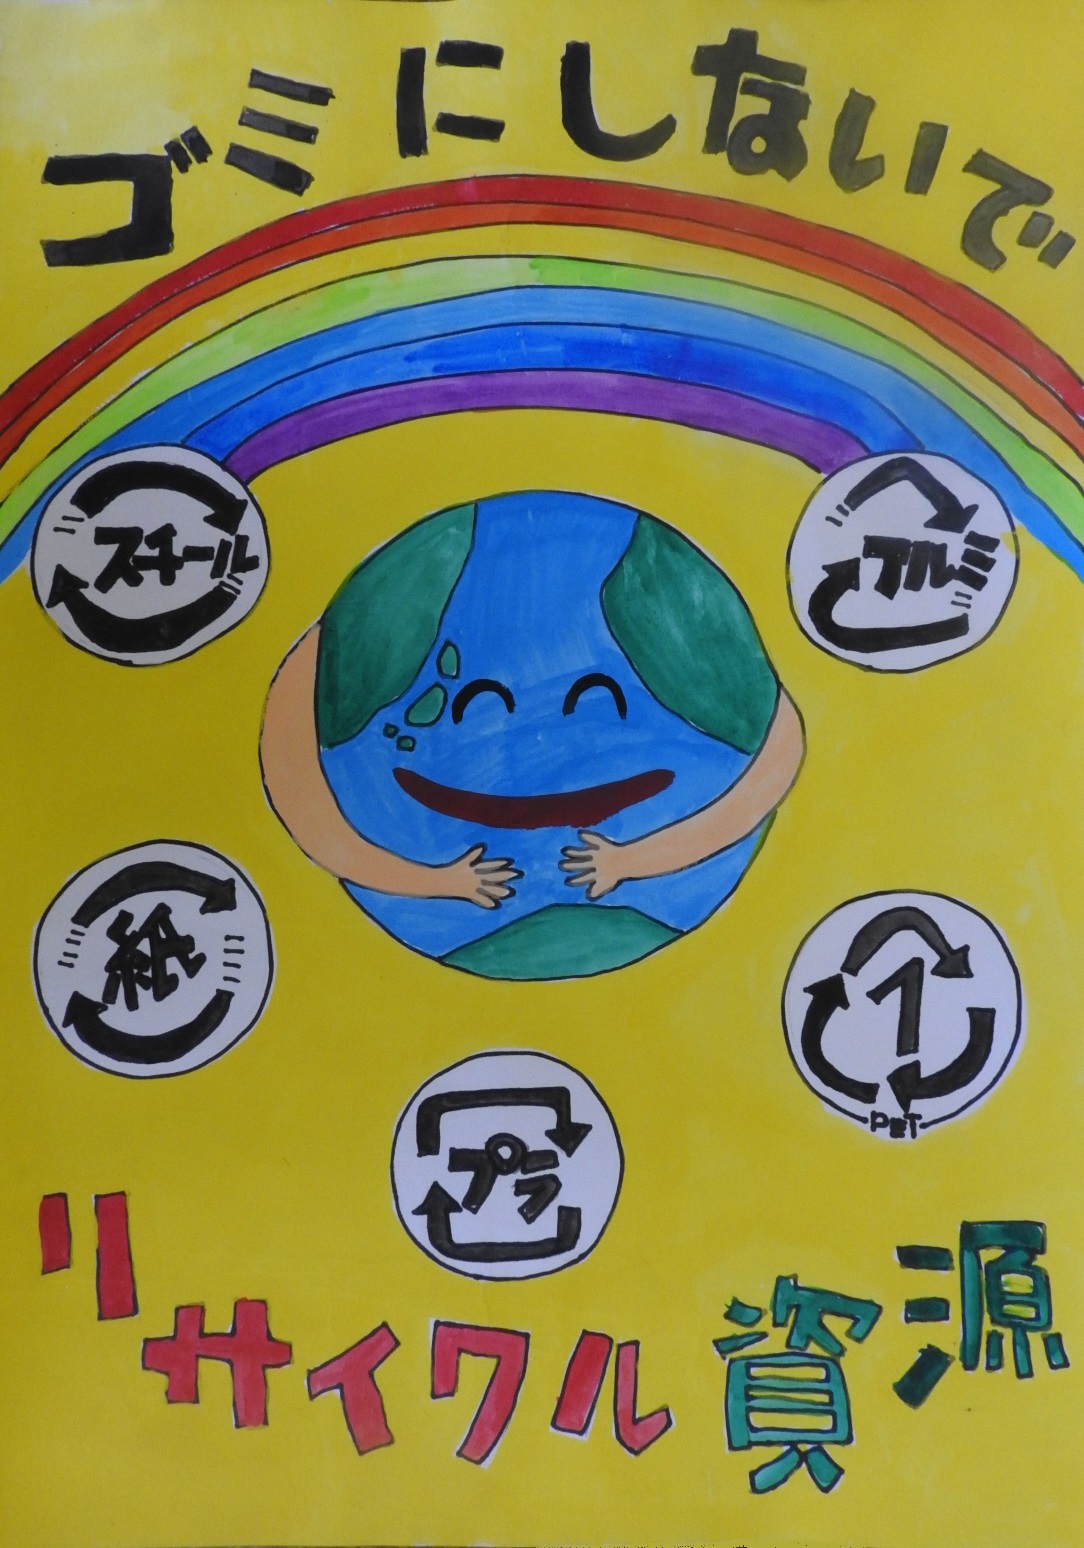 虹と笑顔の地球の周りにリサイクルマークの描かれた絵に「ゴミにしないで リサイクル資源」と書かれたポスター